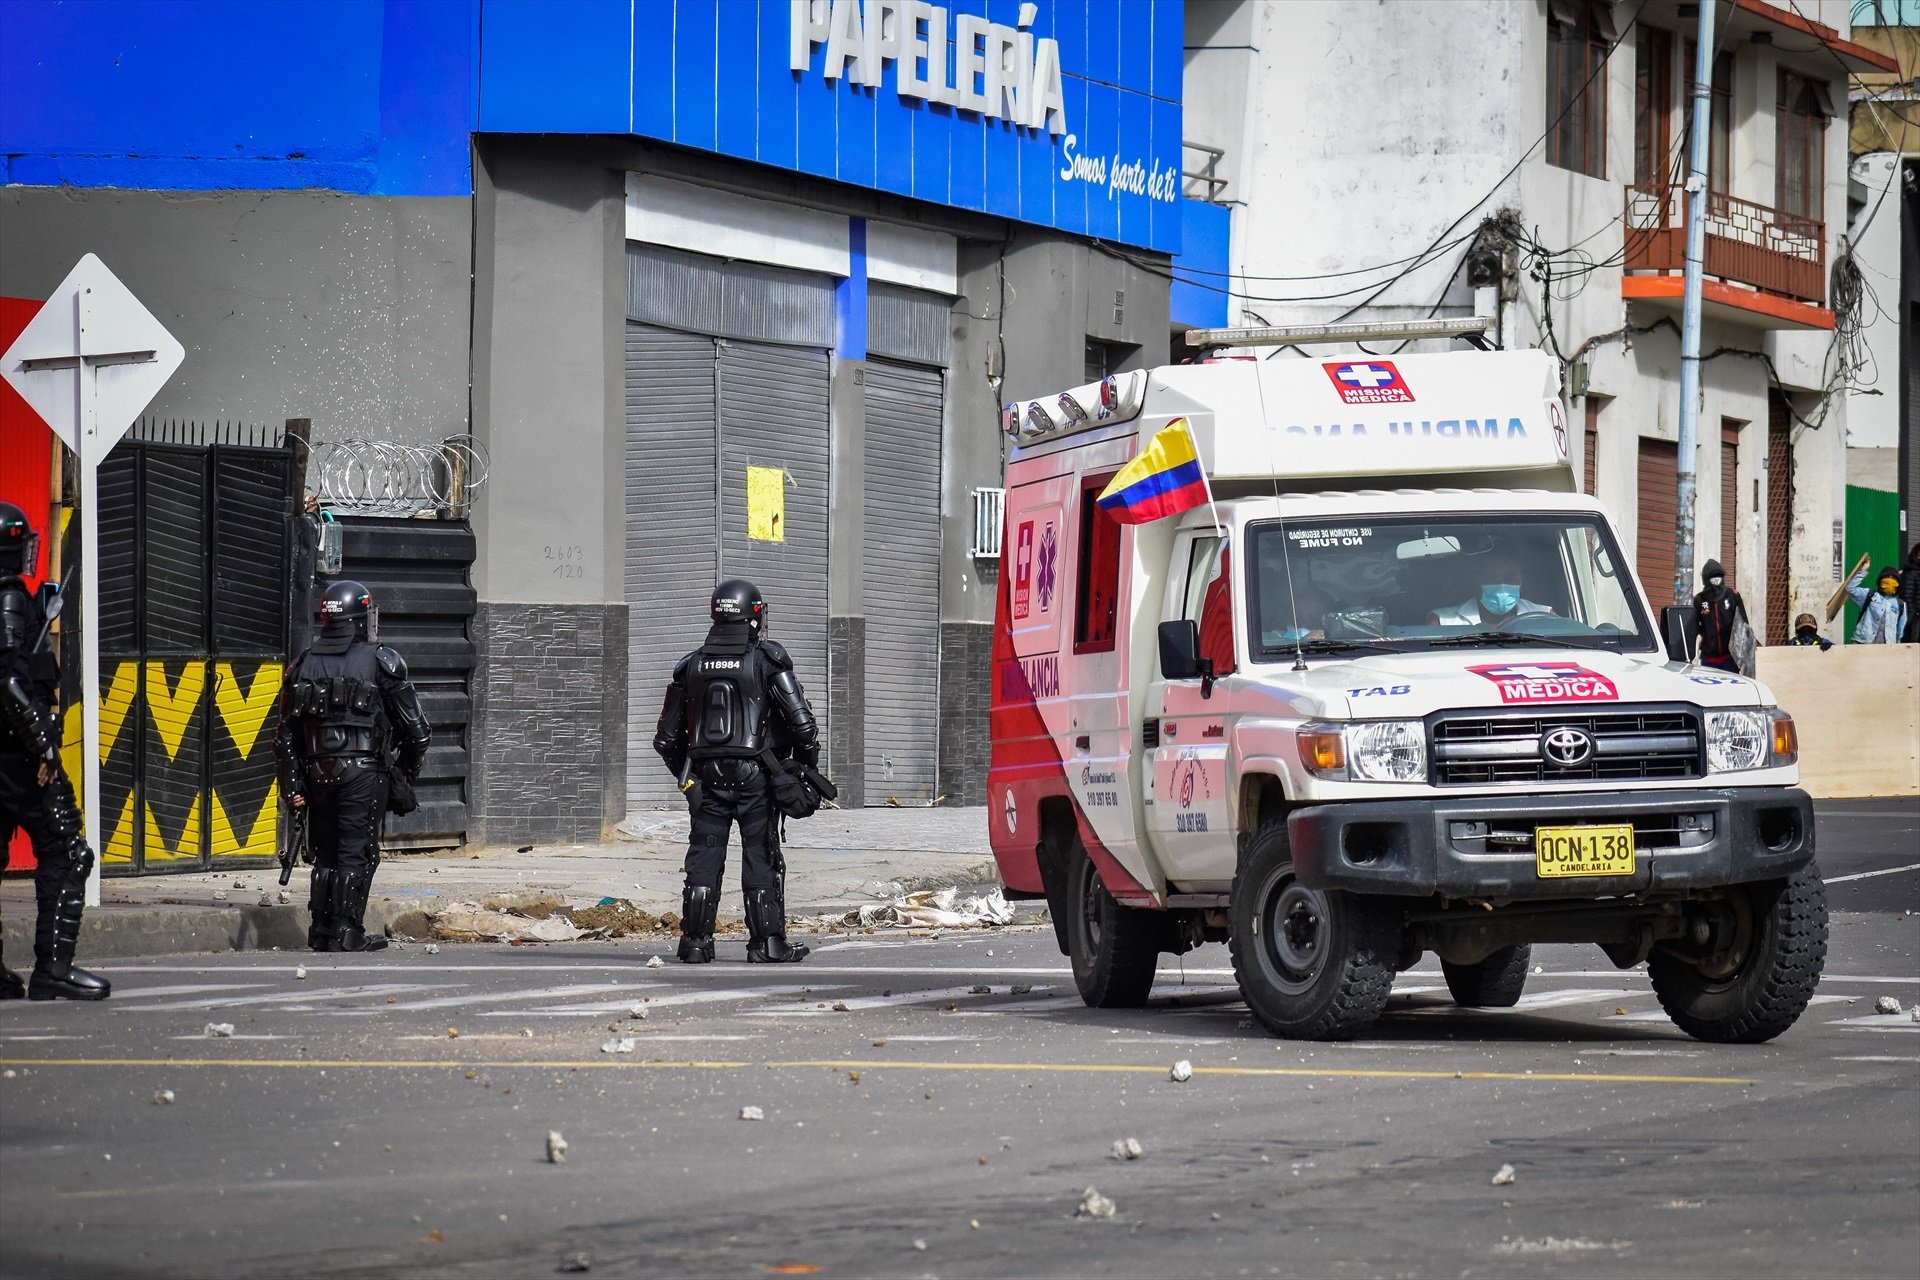 Agents de policia de Colòmbia i una ambulància en una imatge d'aruxiu / Europa Press, Contacto, Camilo Erasso, Arxiu